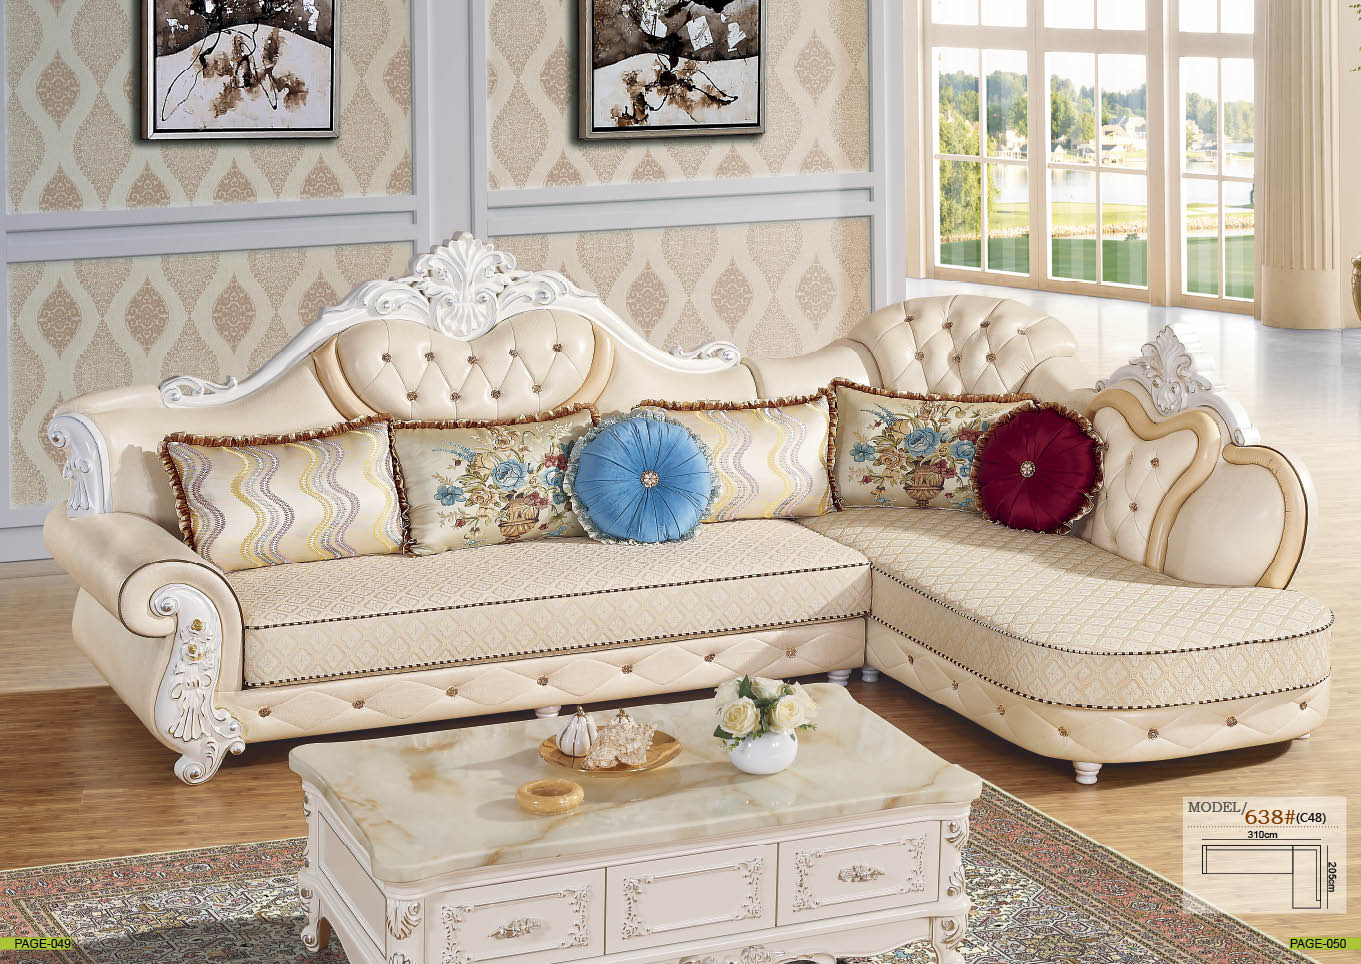 Ghế sofa tân cổ điển với kiểu dáng hiện đại, sang trọng cho phòng khách của bạn.